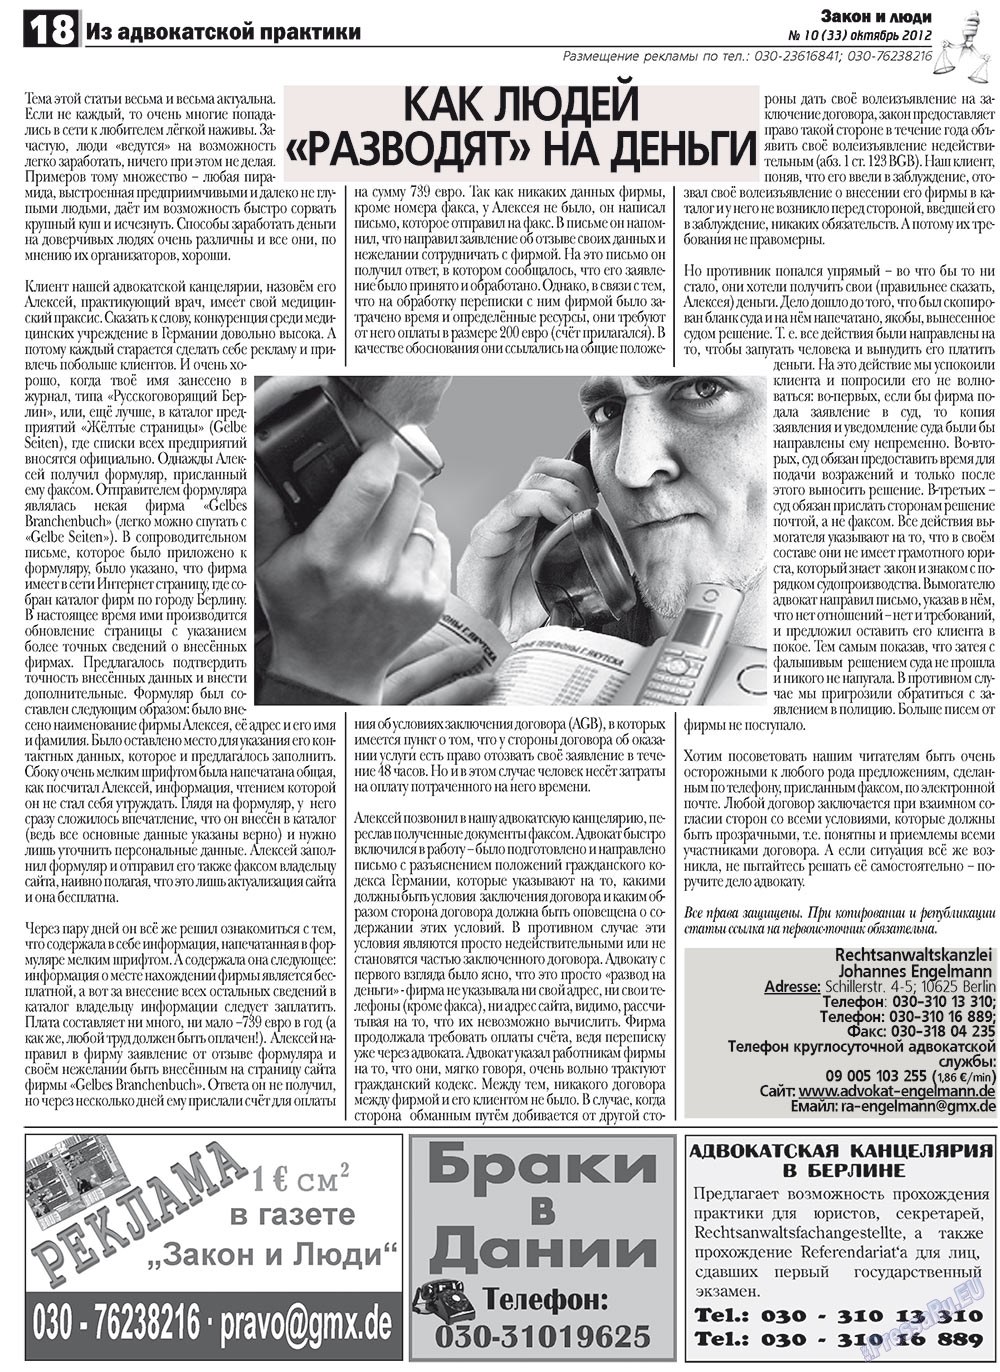 Закон и люди, газета. 2012 №10 стр.18